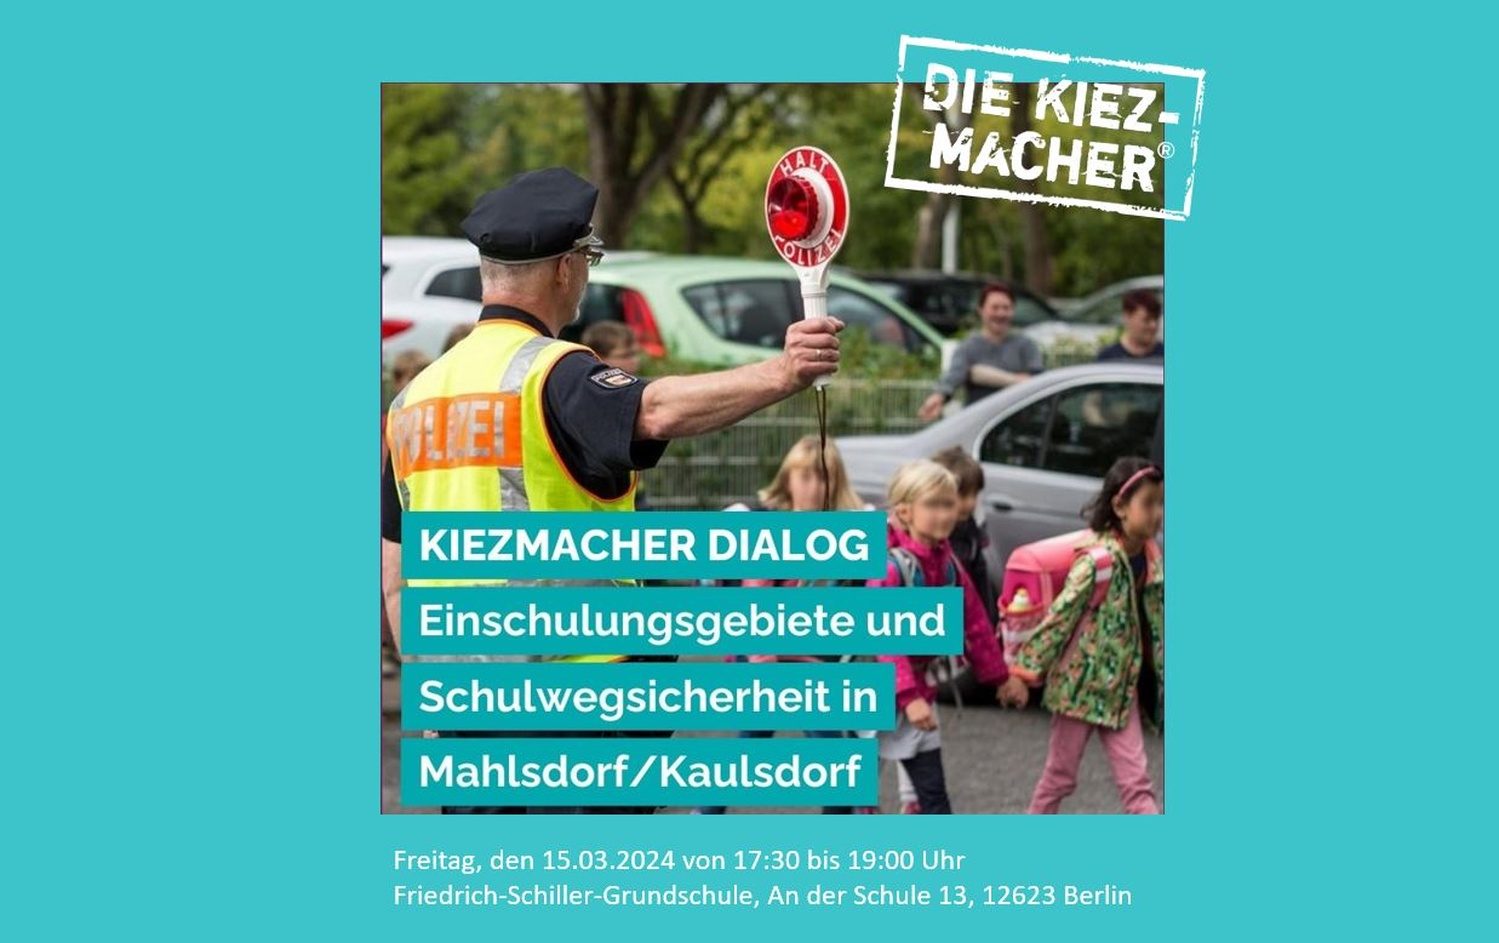 Kiezmacher-Dialog Einschulungsgebiete und Schulwegsicherheit in Mahlsdorf/Kaulsdorf